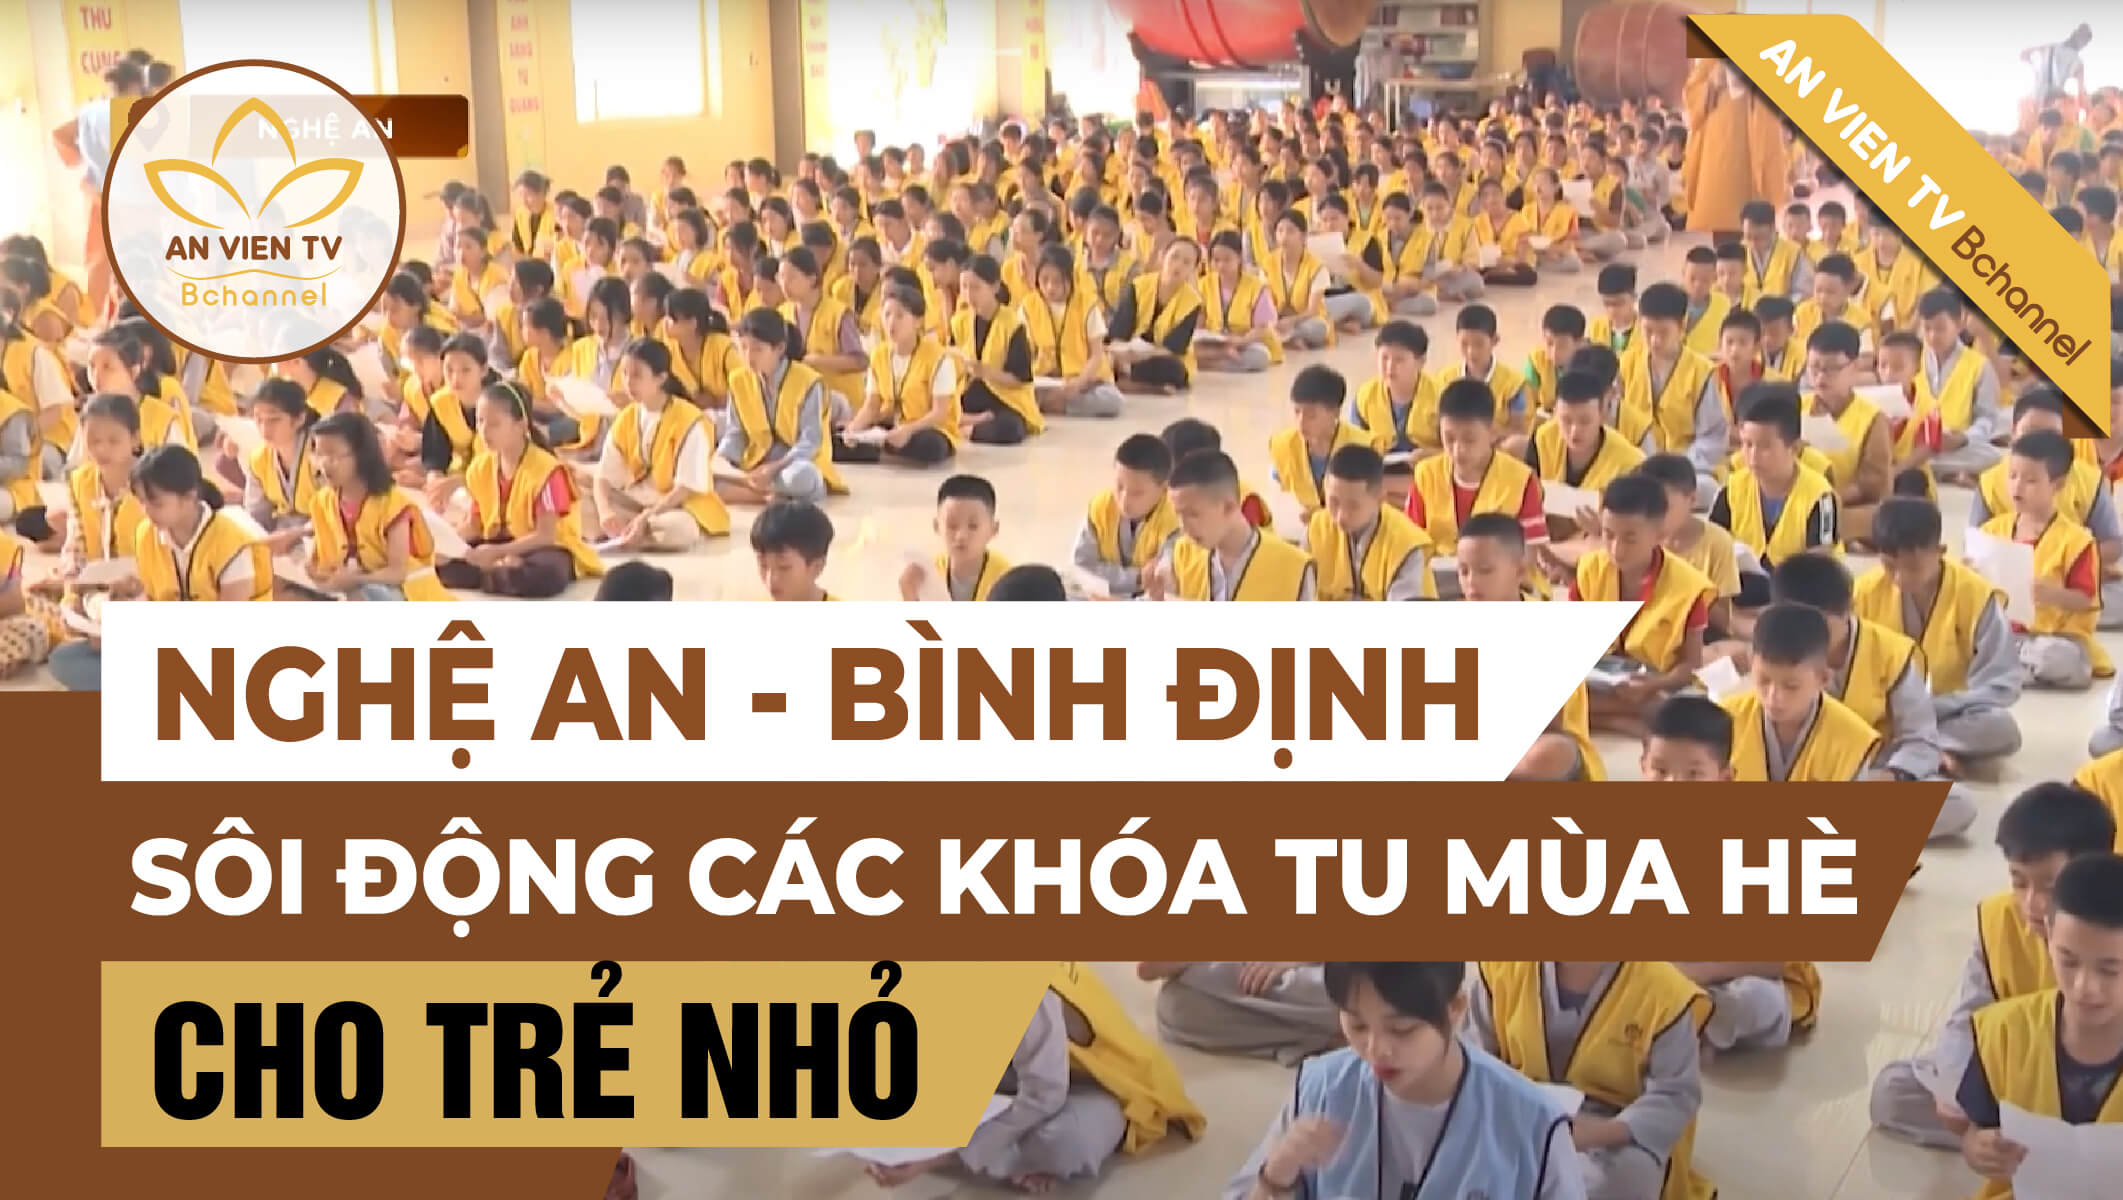 Nghệ An - Bình Định: Sôi động các khóa tu mùa hè cho trẻ nhỏ